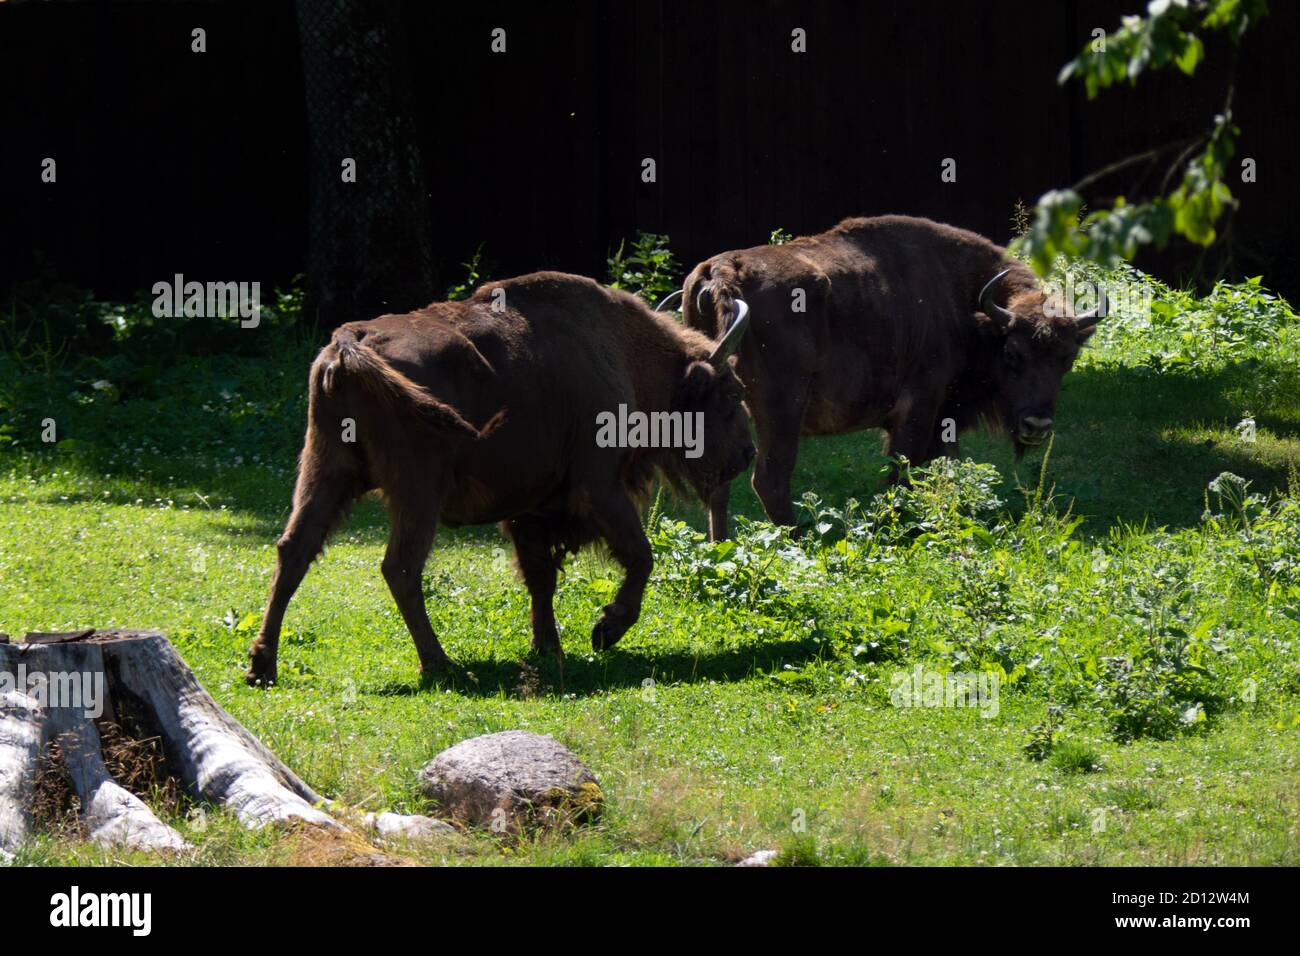 Bisons européens (Bison bonasus) en pâturage dans la forêt de Bialowieza en Pologne, en Europe. Herbe de nourriture d'animaux sauvages dans le parc national polonais. Animaux sauvages, sauvages Banque D'Images